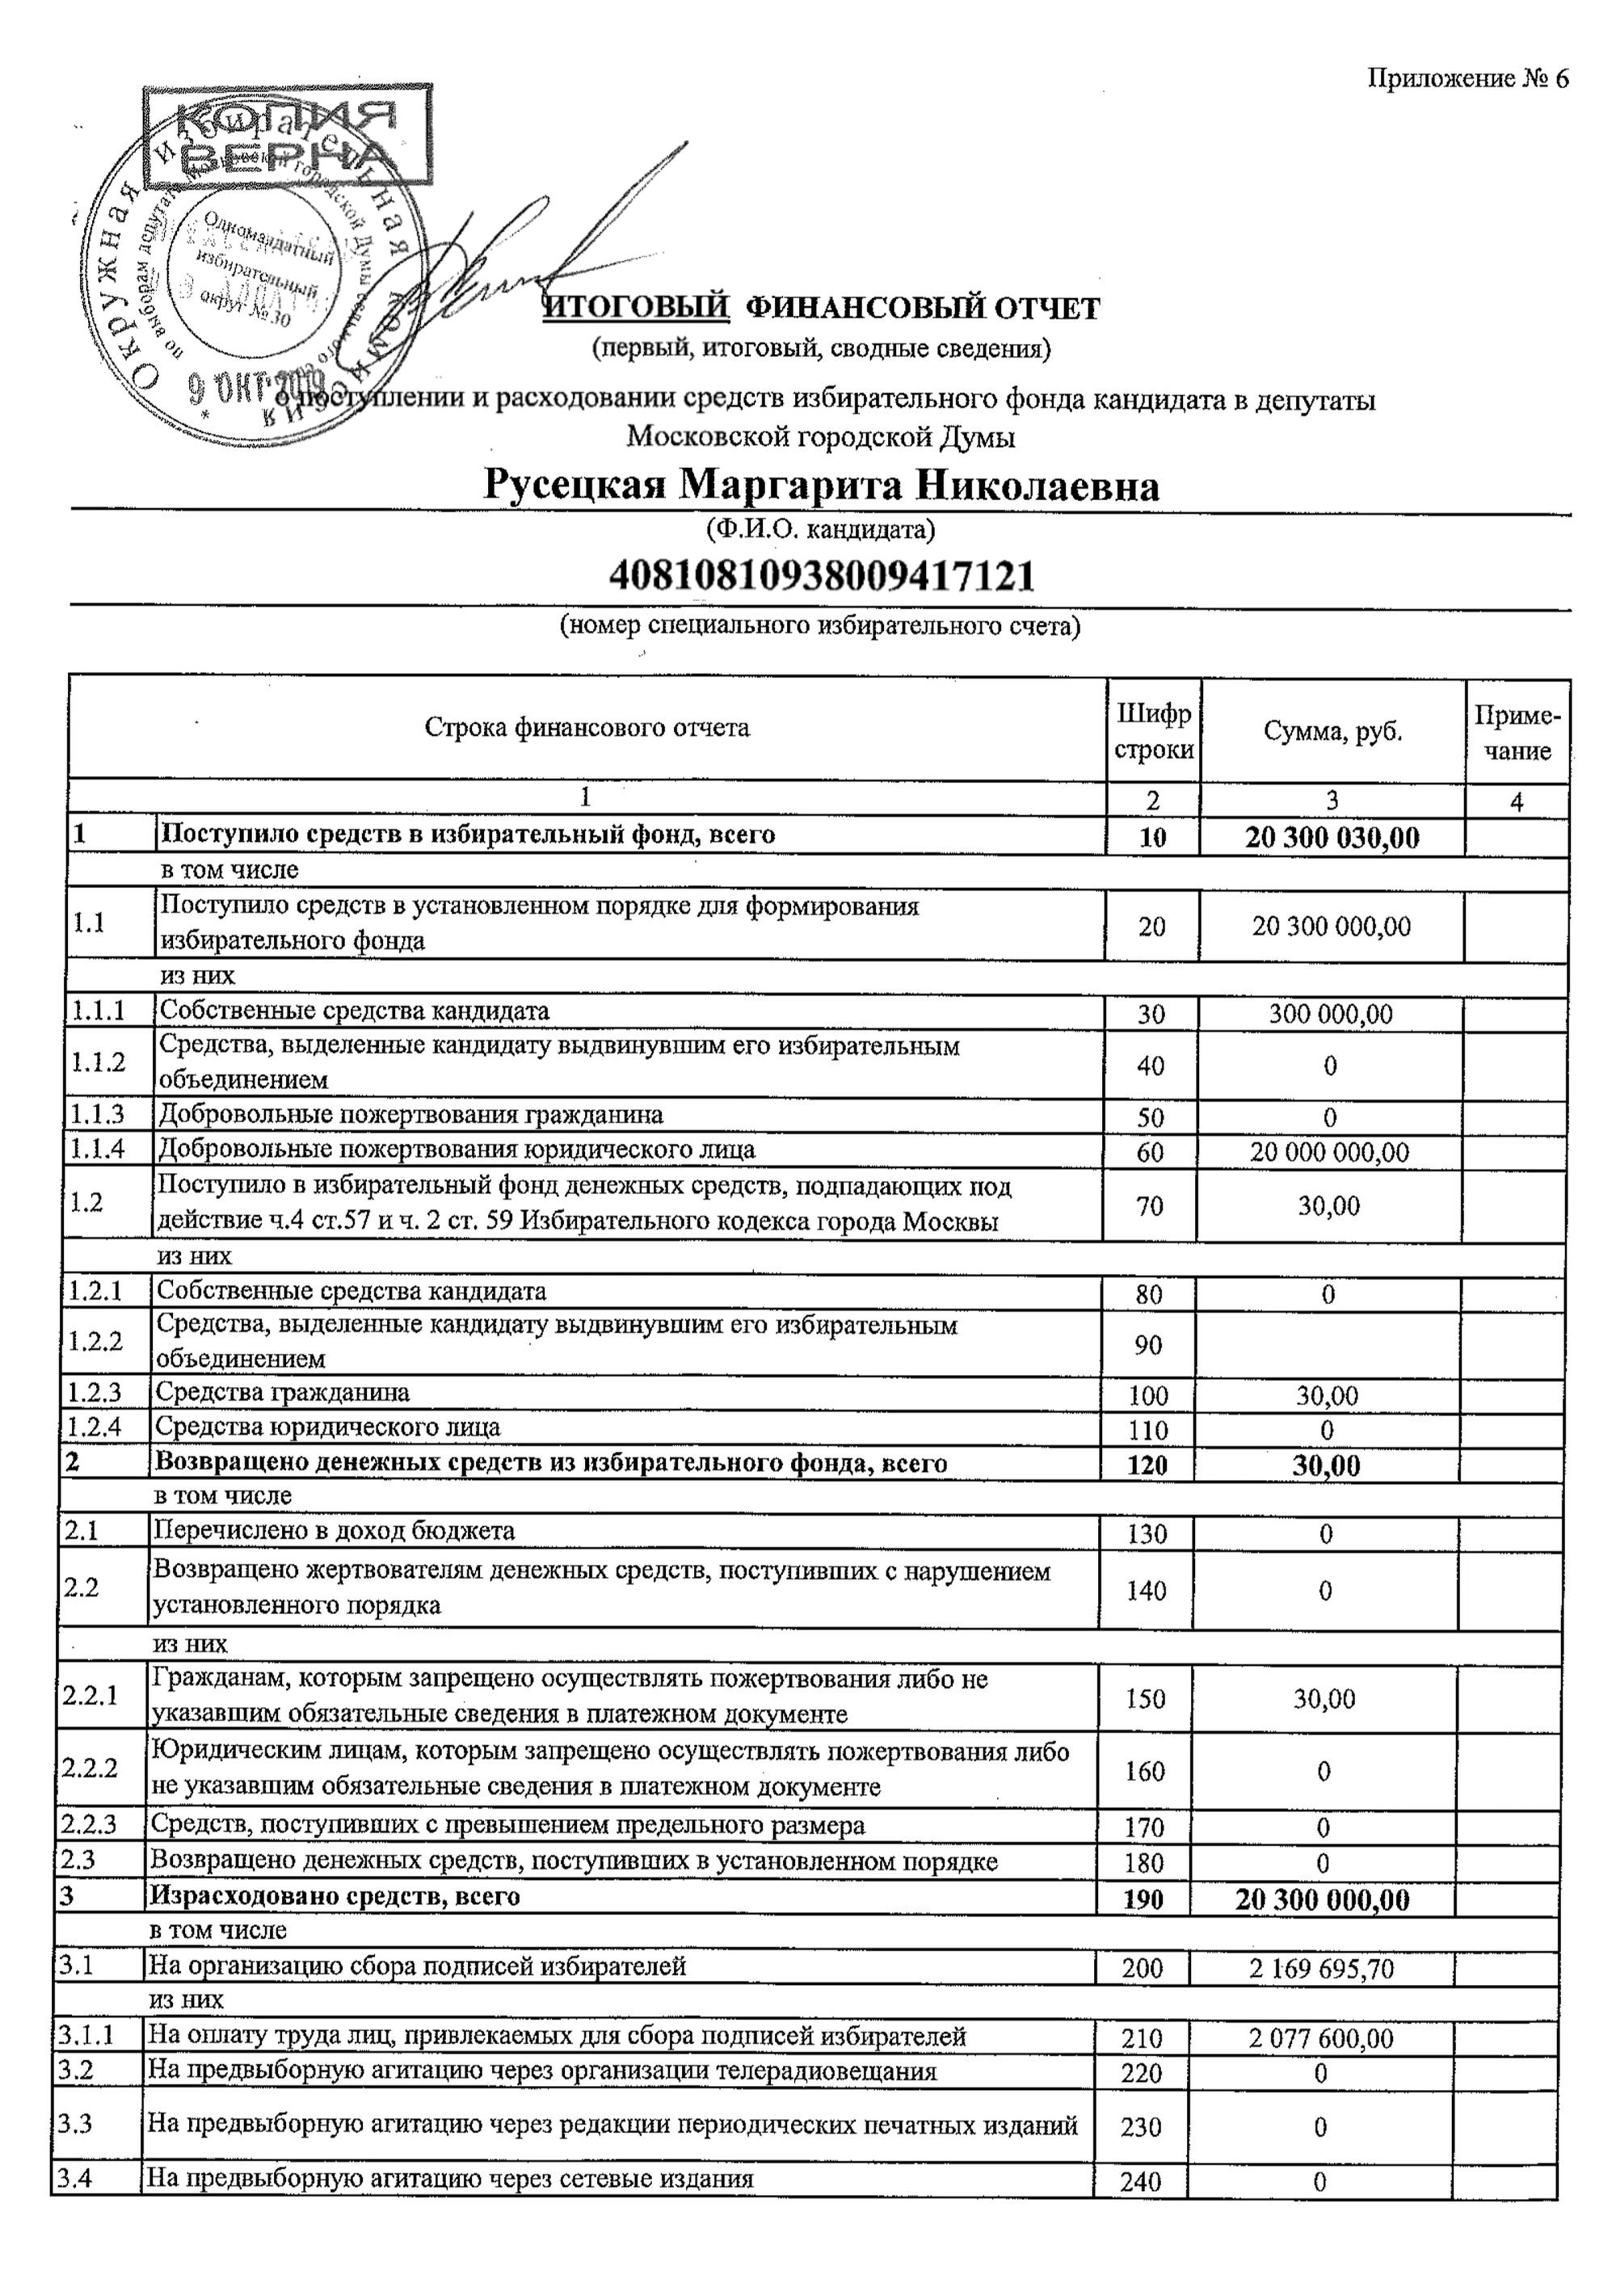 Например, избранный депутат Мосгордумы по округу № 30 в 2019 году потратила на свою избирательную кампанию больше 20 млн рублей